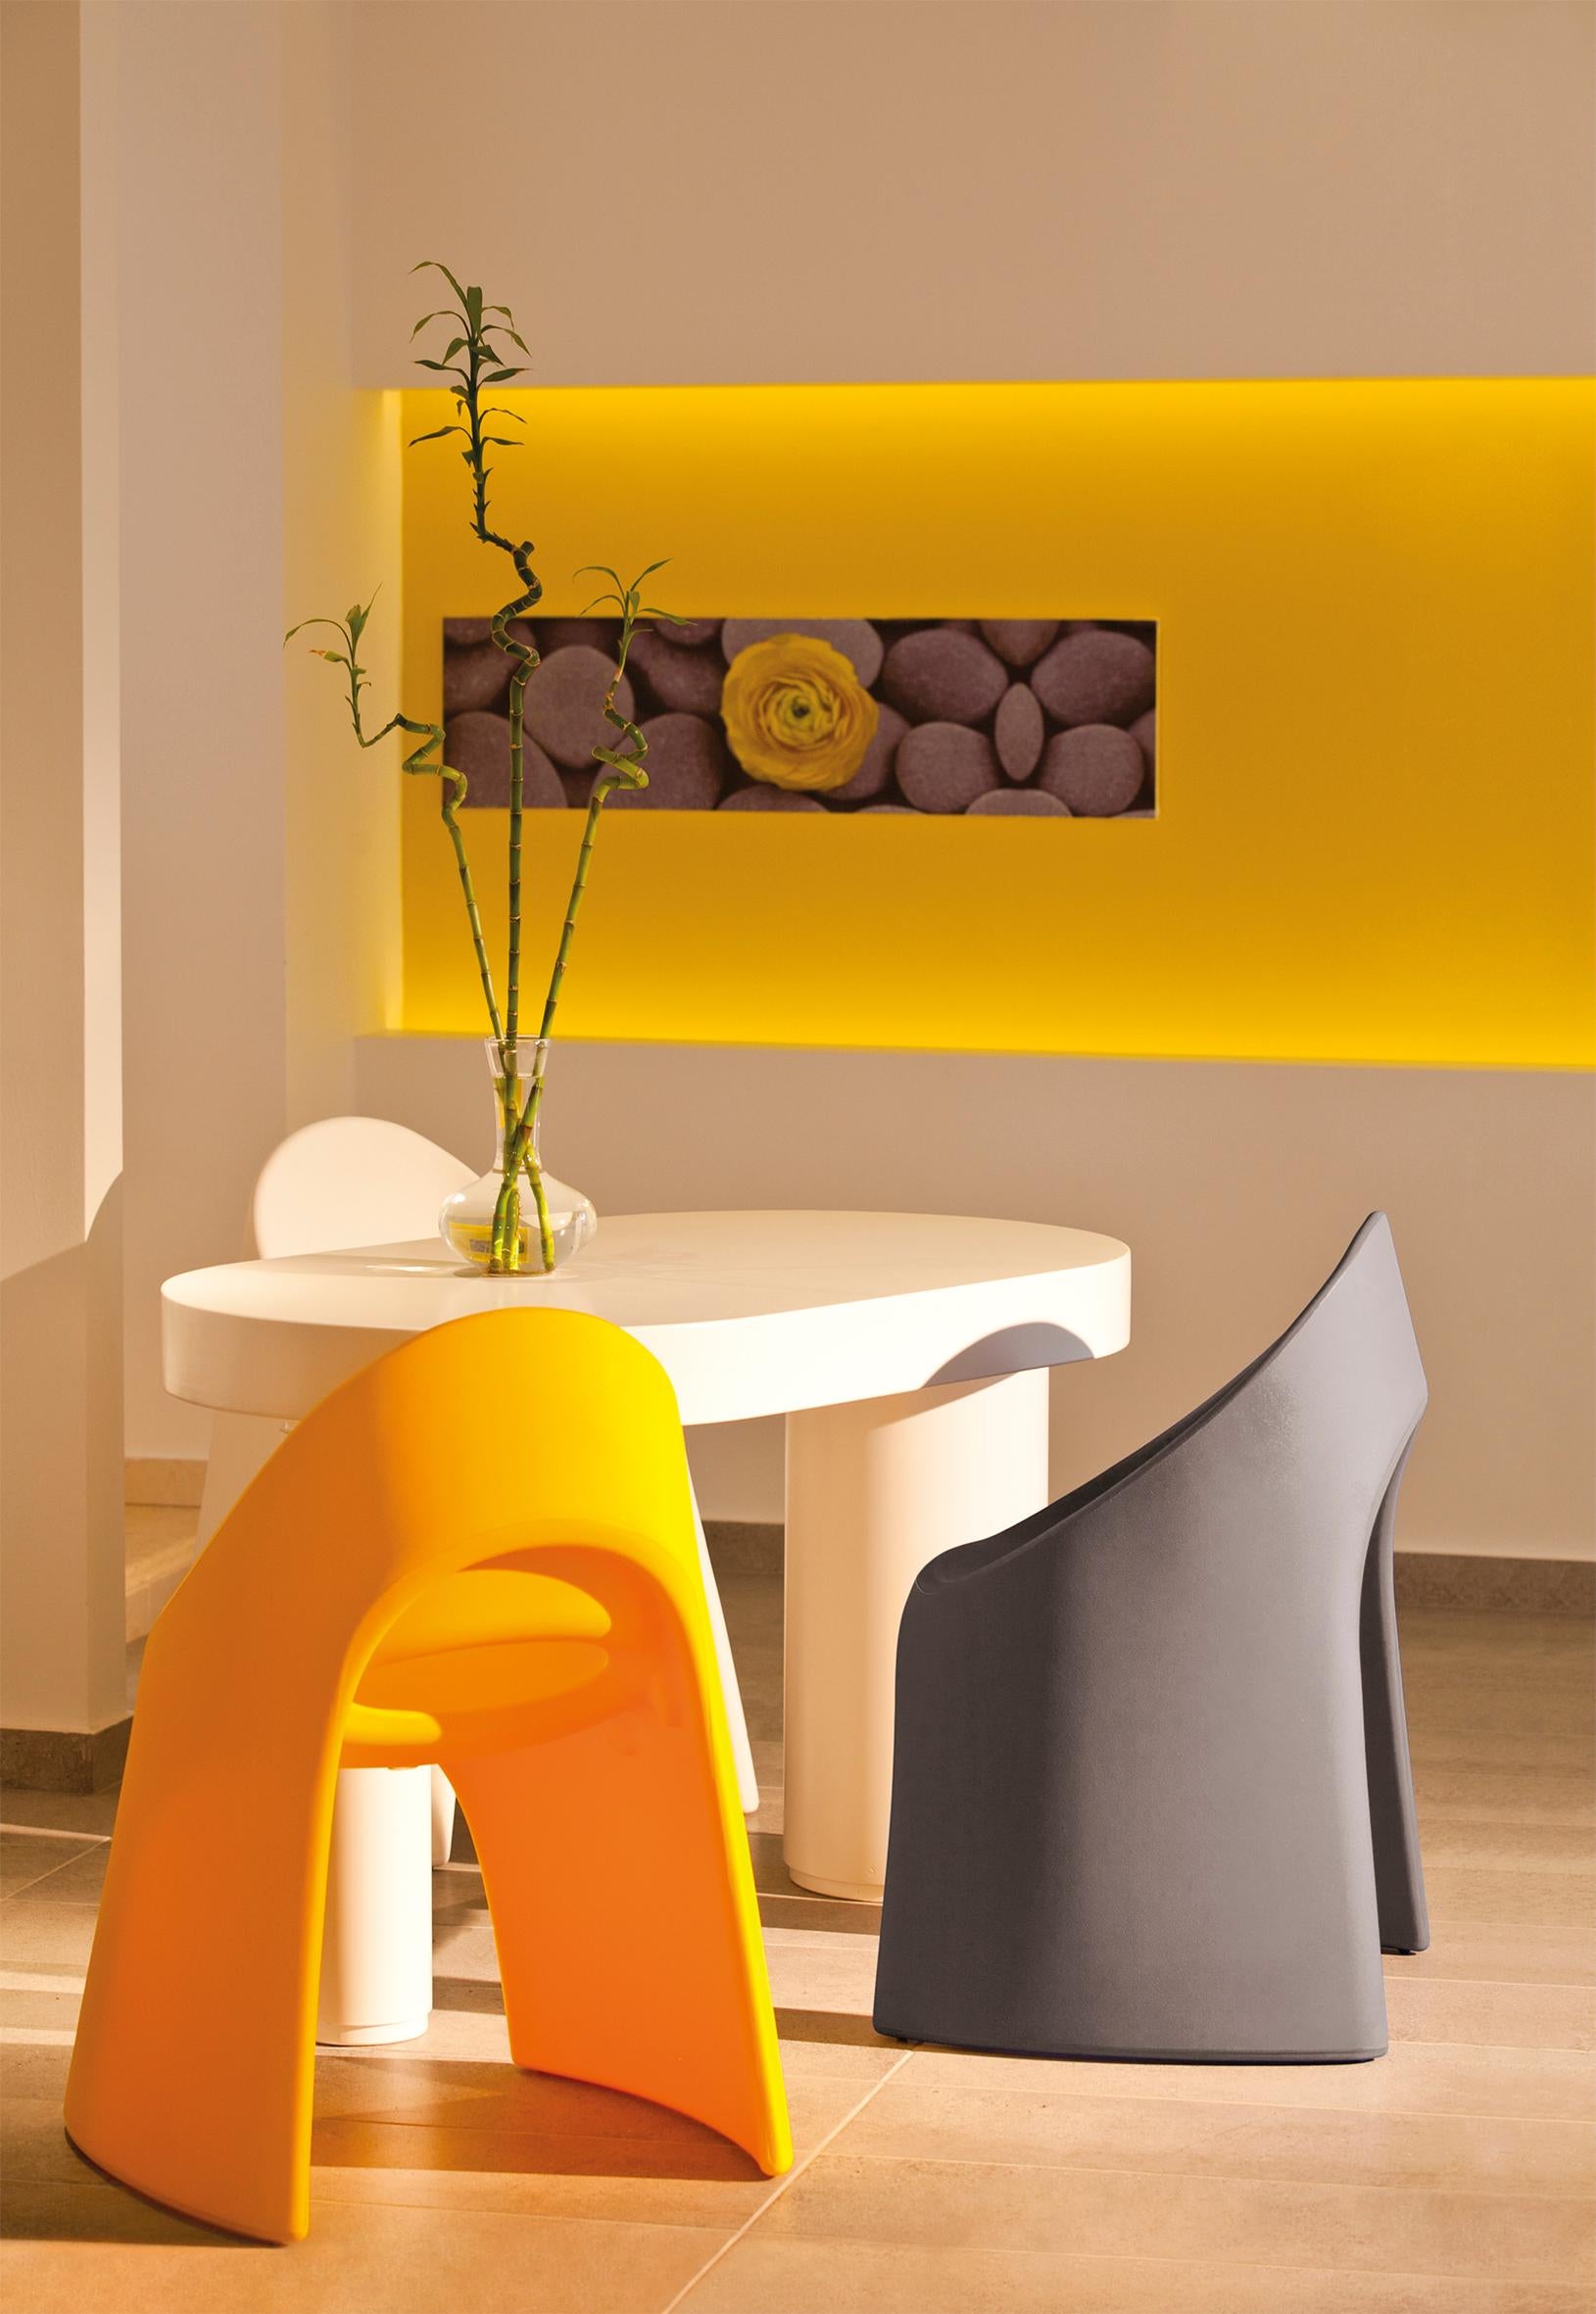 Italo Pertichini entwirft Amélie, eine Familie, die sich durch fließende und geschwungene Linien auszeichnet. Der Designer entwirft eine Familie von Möbeln für den Innen- und Außenbereich, sowohl für den Wohnbereich als auch für den Objektbereich.